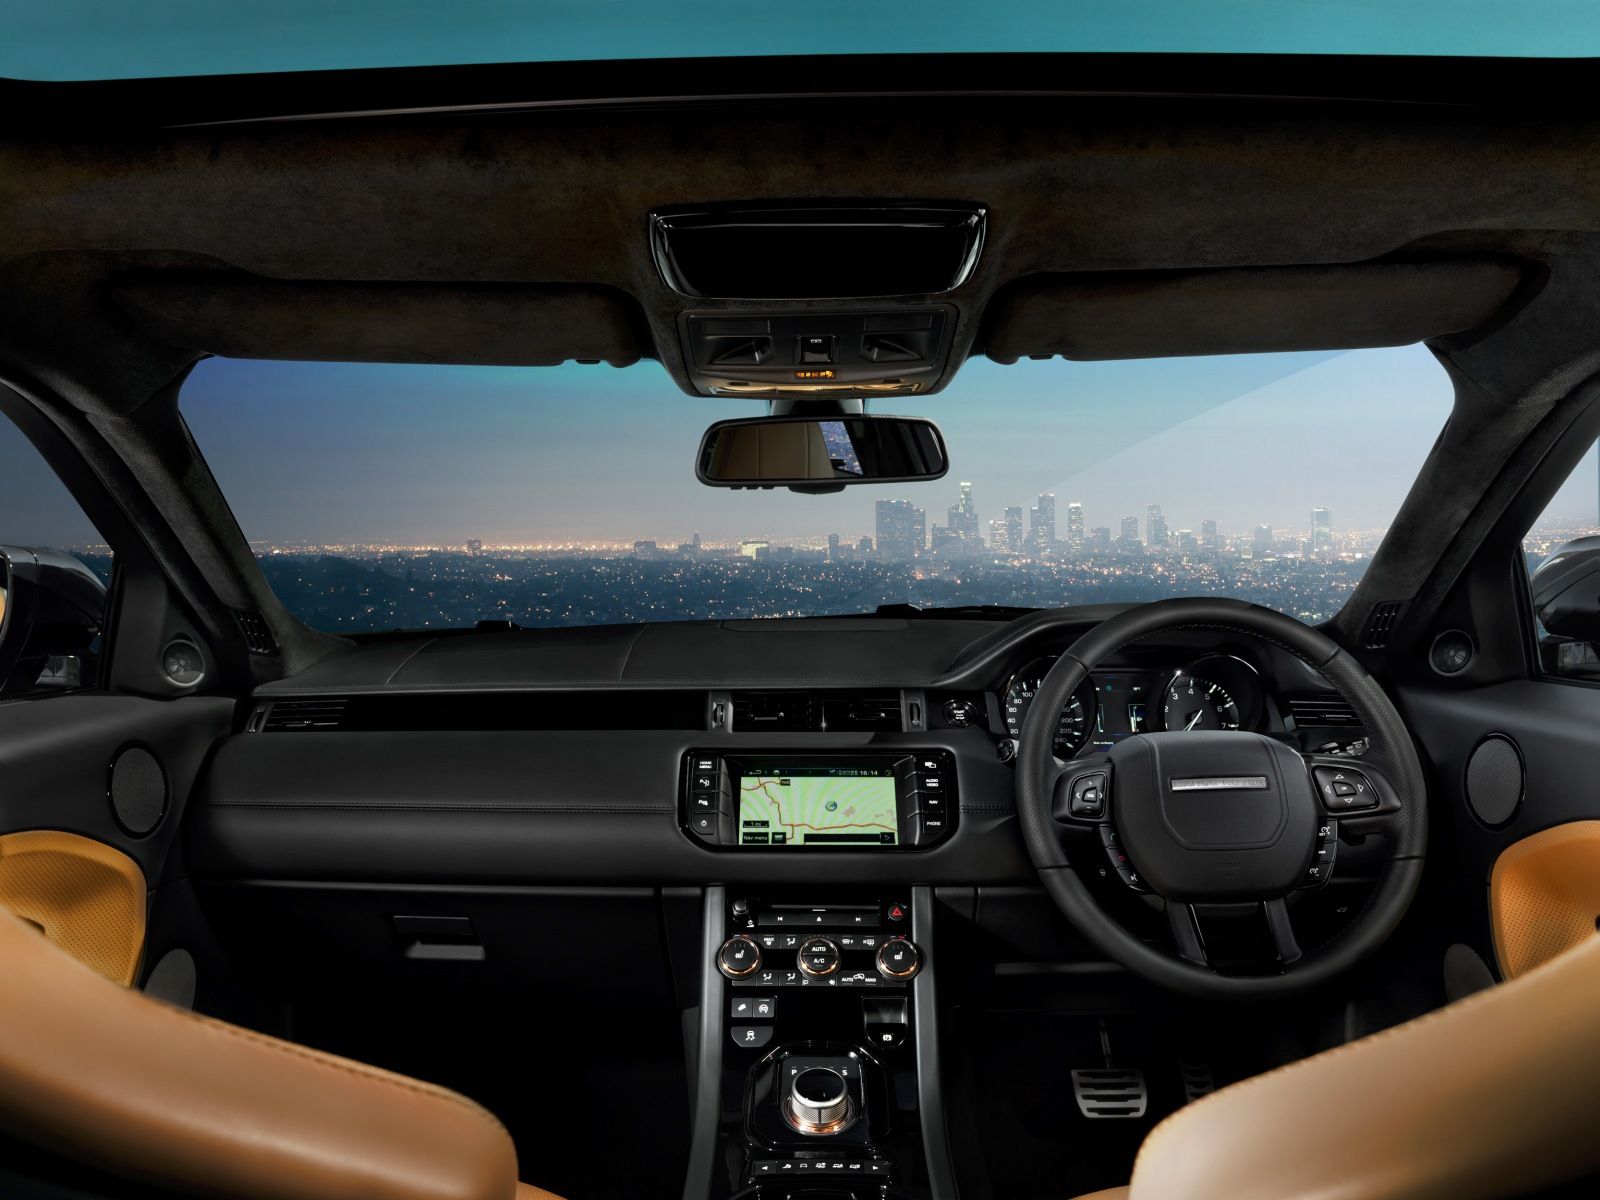 2012 Range Rover Evoque Victoria Beckham Edition